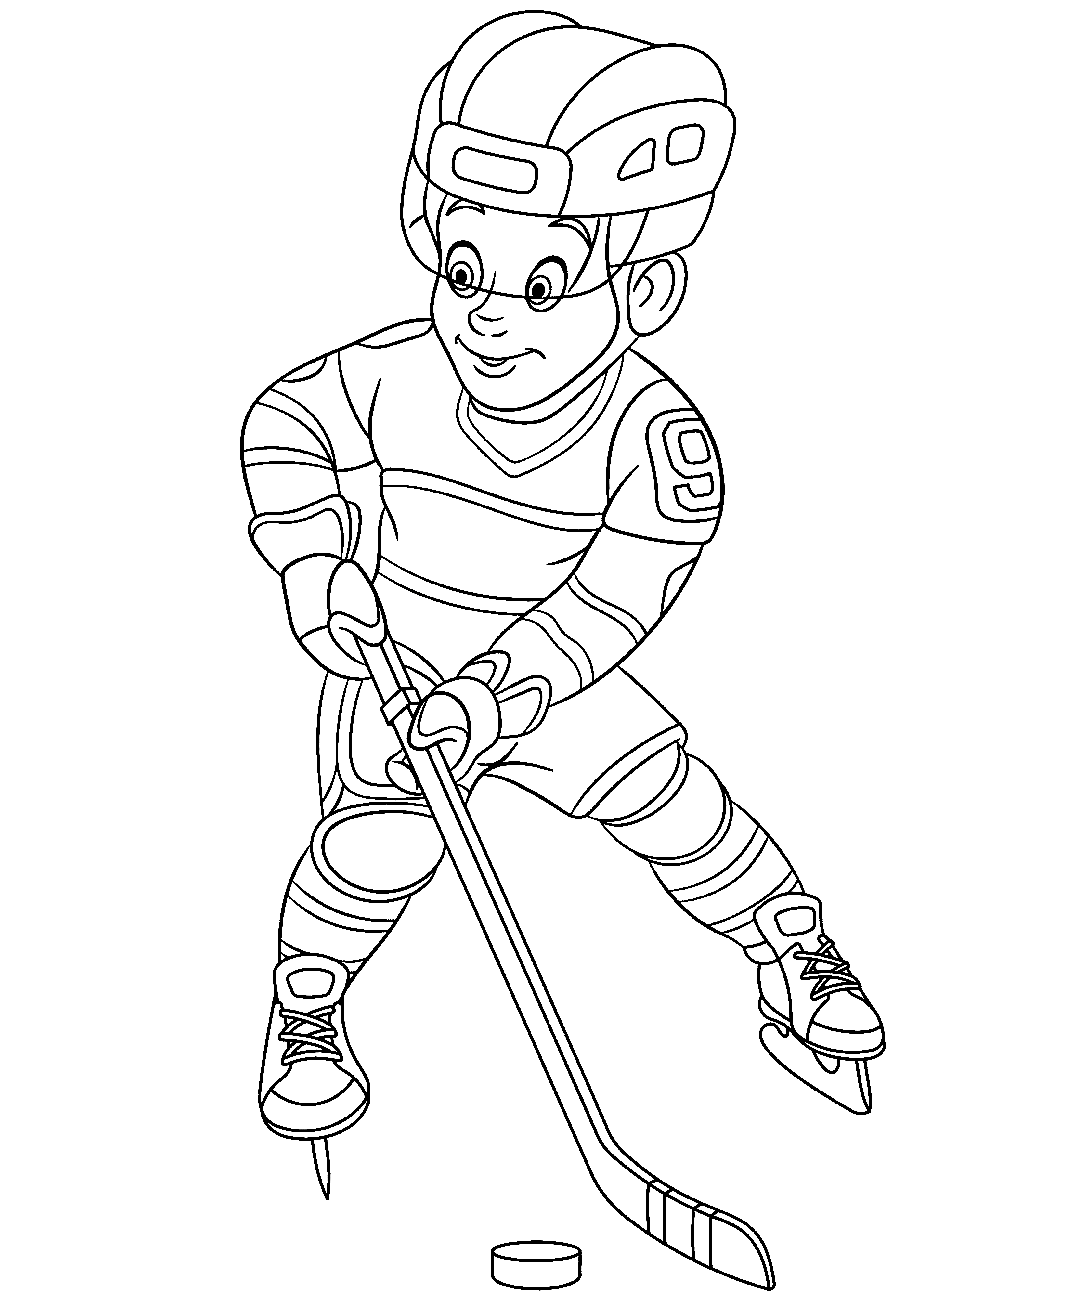 Junge spielt Hockey aus Hockey